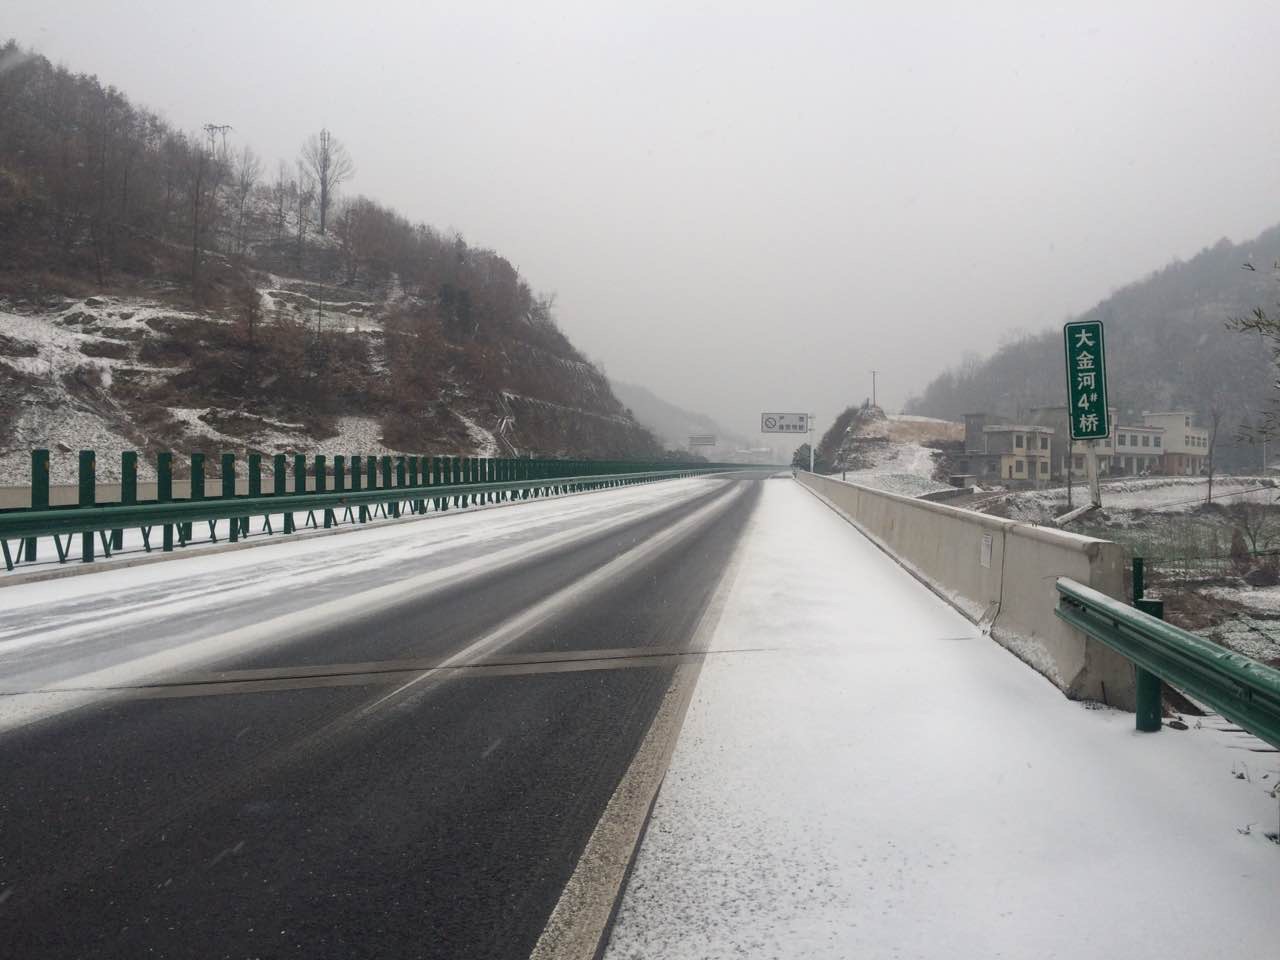 安康境内高速公路降雪湿滑 提醒过往司机谨慎慢行